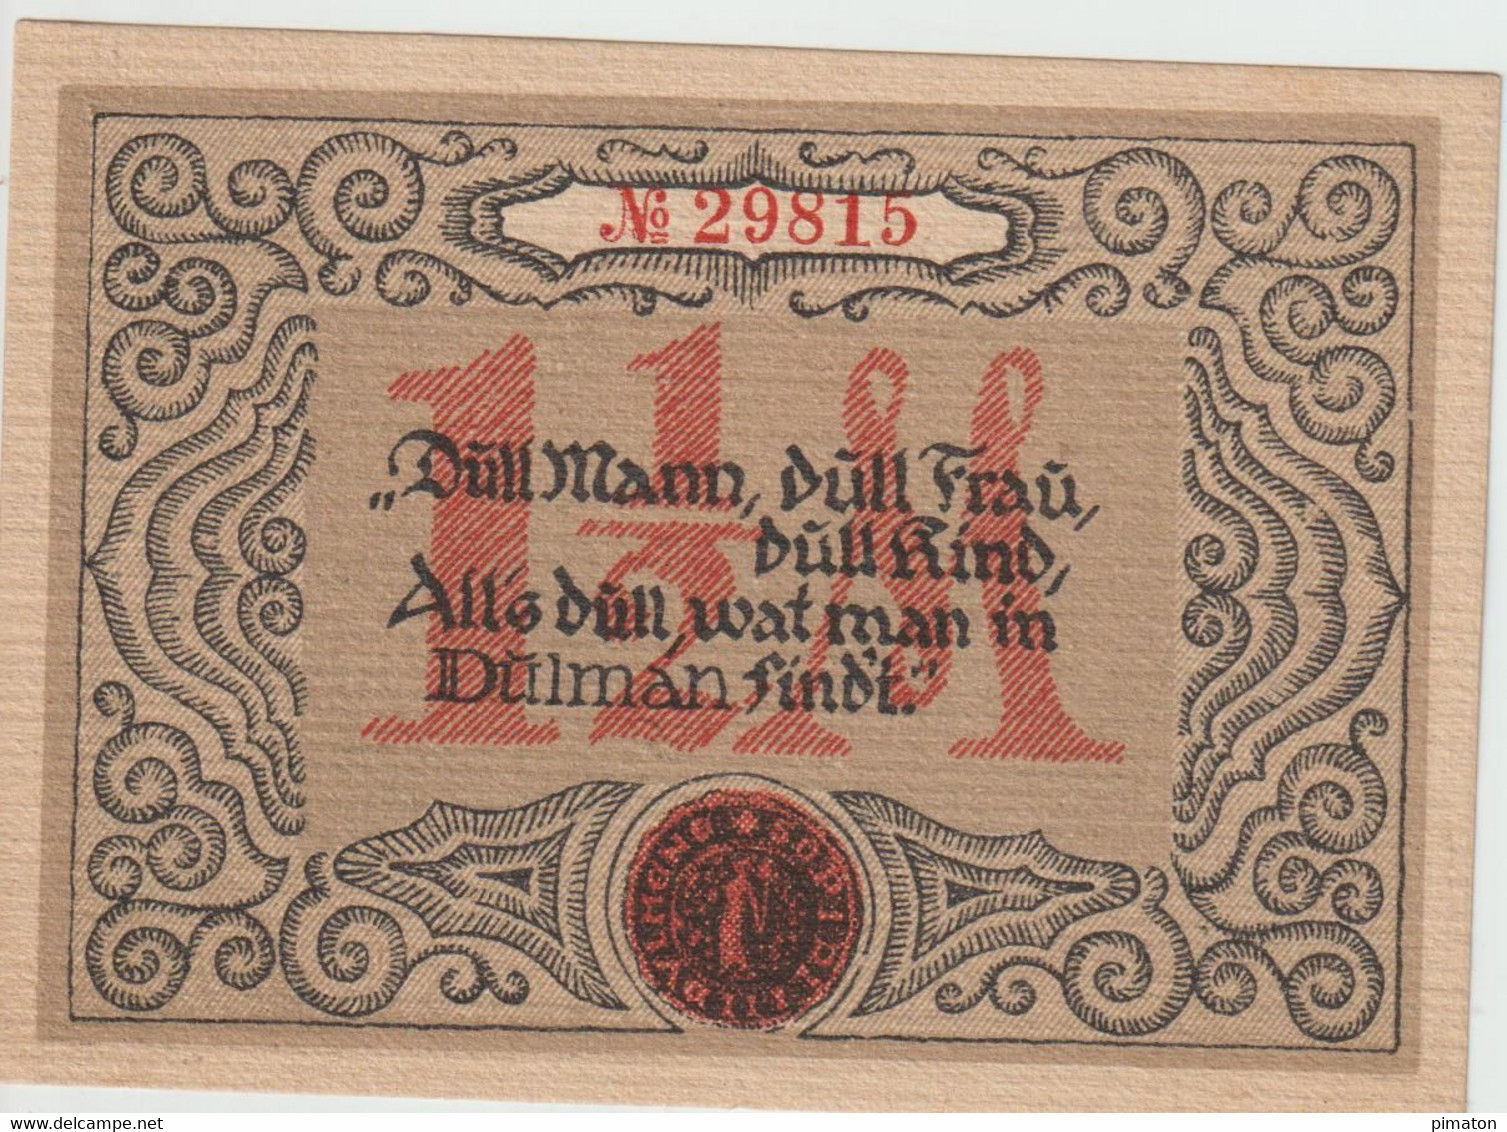 Deutsches Notgeld - 5 billets de Eisenach  1 - 1,50 -2,50 MARKS et 50 - 75 Pfennings